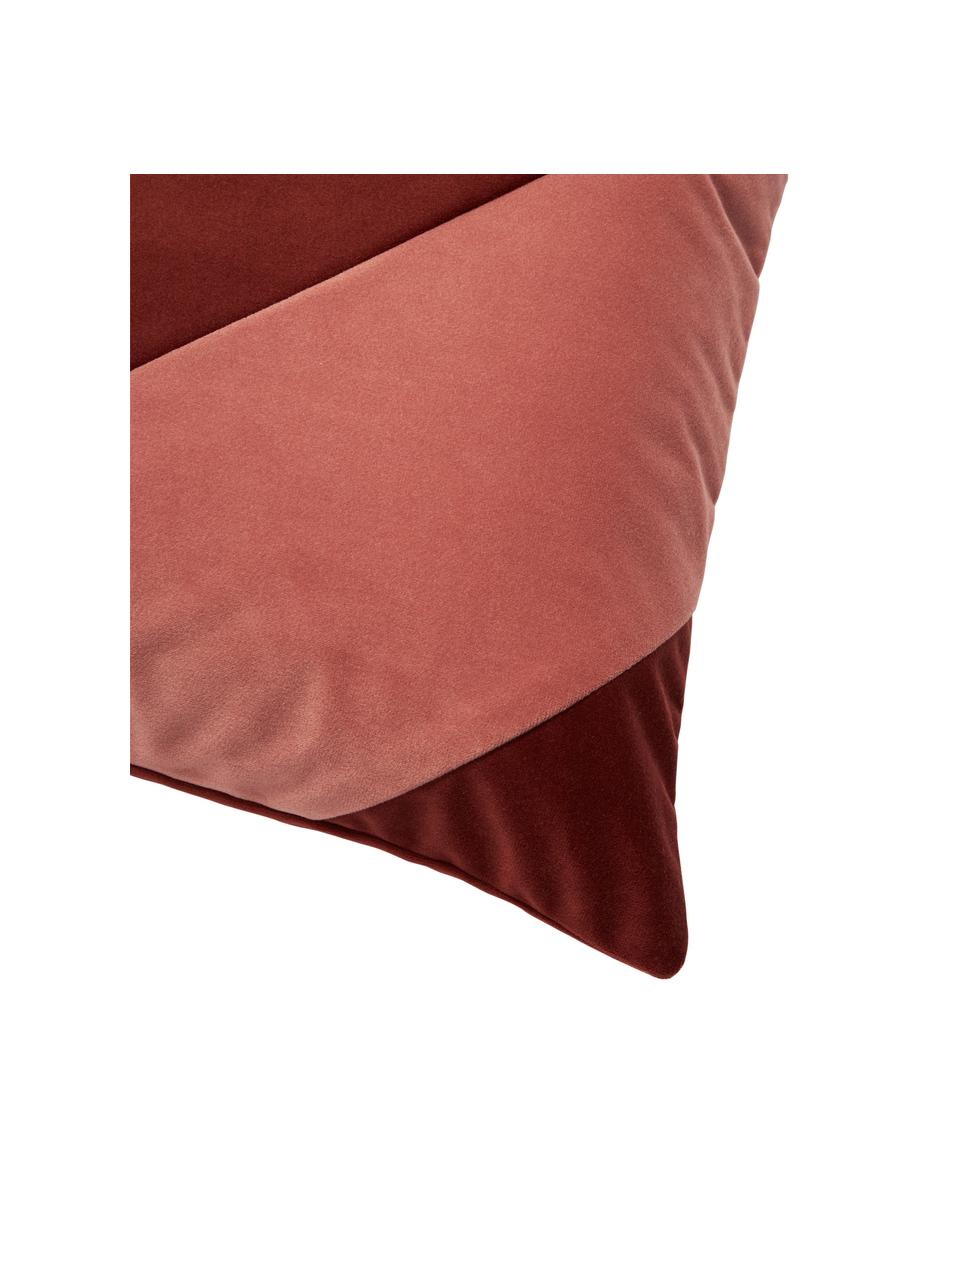 Fluwelen kussenhoes Lenia in rood/oudroze, 100% polyester fluweel

Het materiaal dat in dit product wordt gebruikt, is getest op schadelijke stoffen en gecertificeerd volgens STANDARD 100 door OEKO-TEX® 21.HCN.72514 HOHENSTEIN HTTI., Oudroze, rood, B 45 x L 45 cm